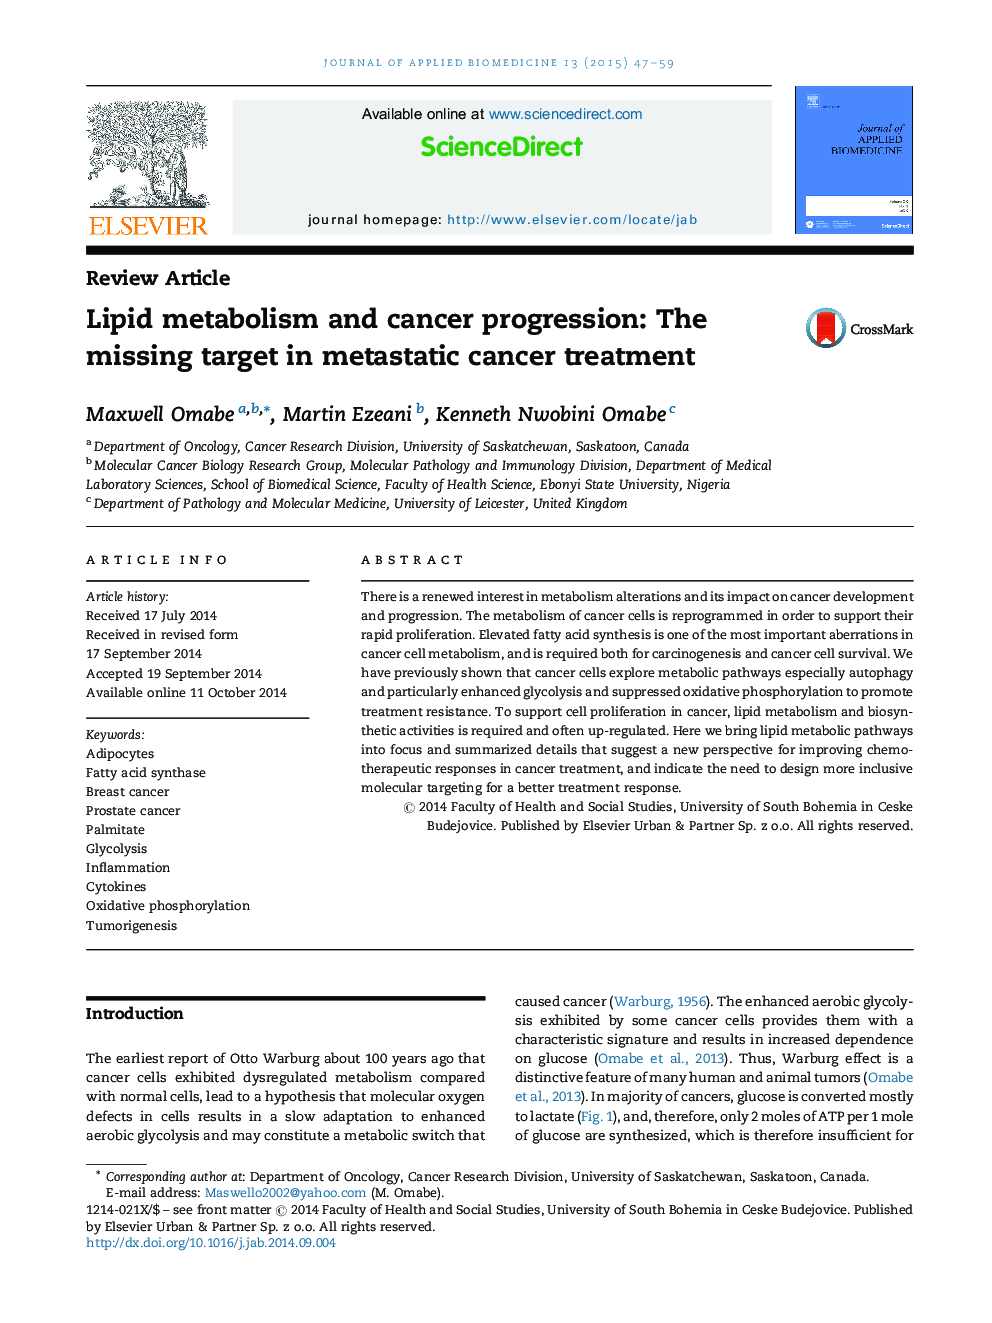 متابولیسم لیپید و پیشرفت سرطان: هدف از دست رفته در درمان سرطان متاستاتیک 